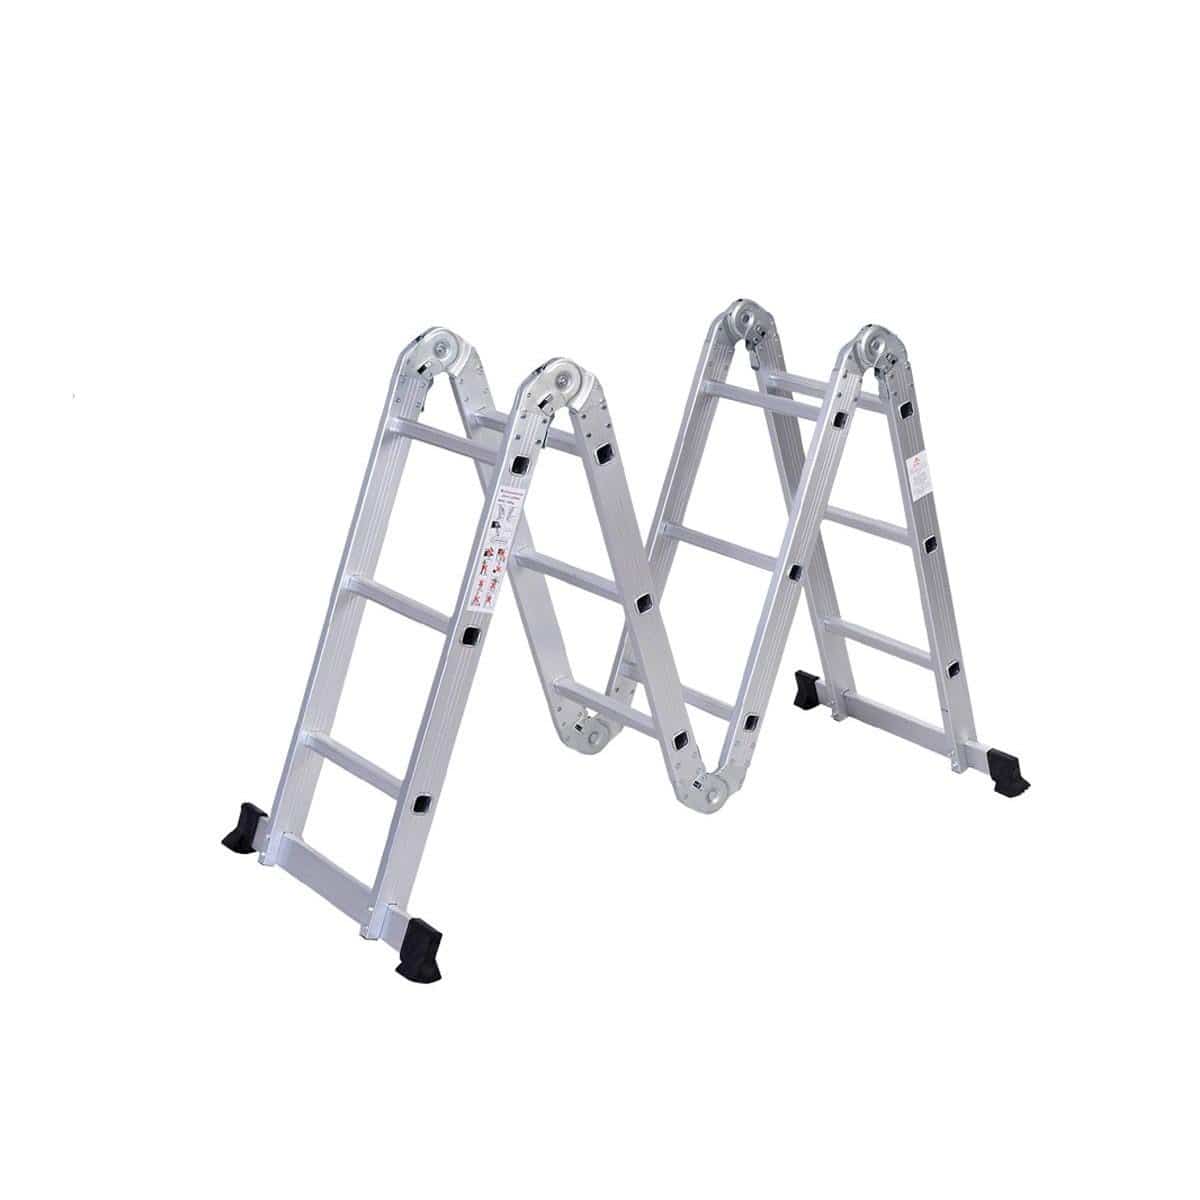 SUMO KING Heavy Duty Multi Purpose Ladder Flat Foot (12 STEPS)